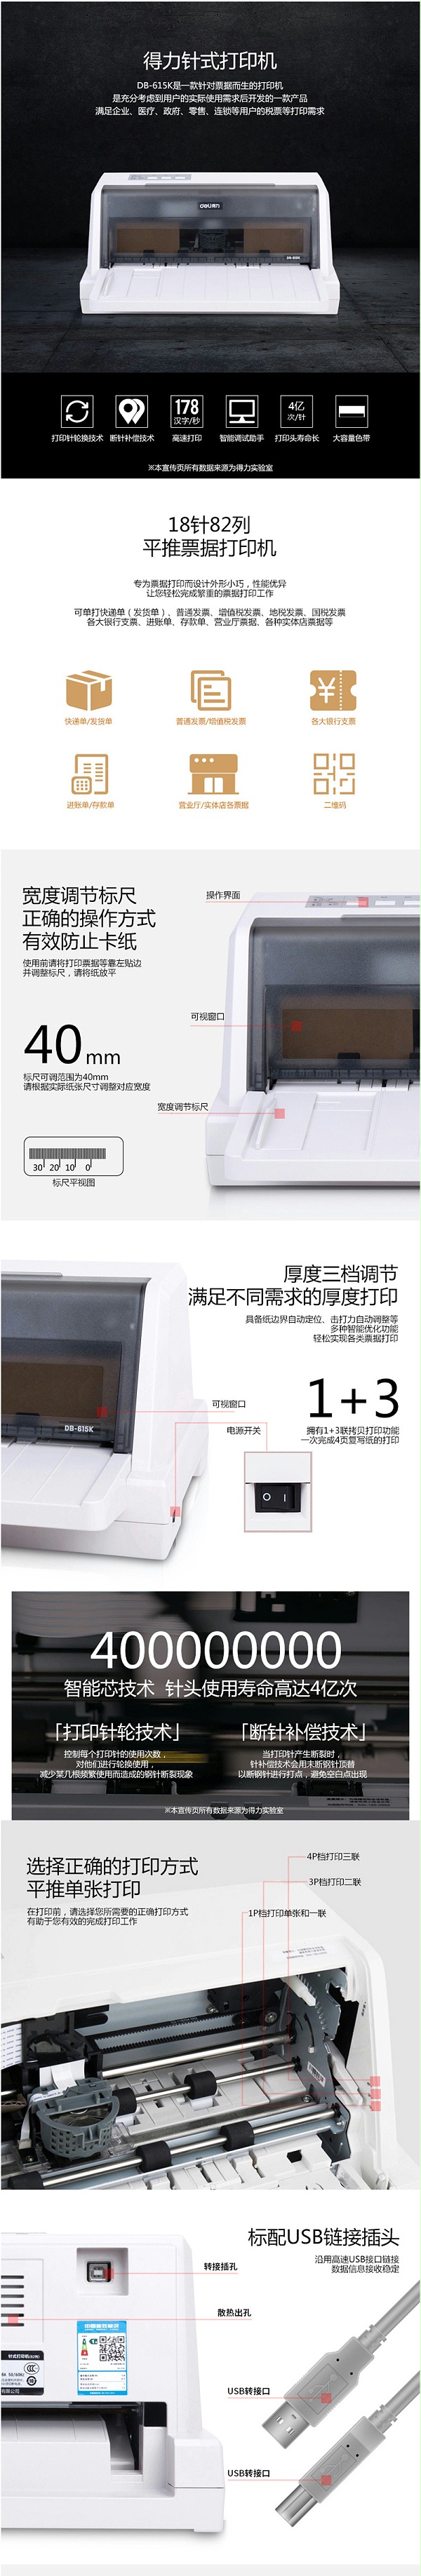 得力DL-610K 针式打印机